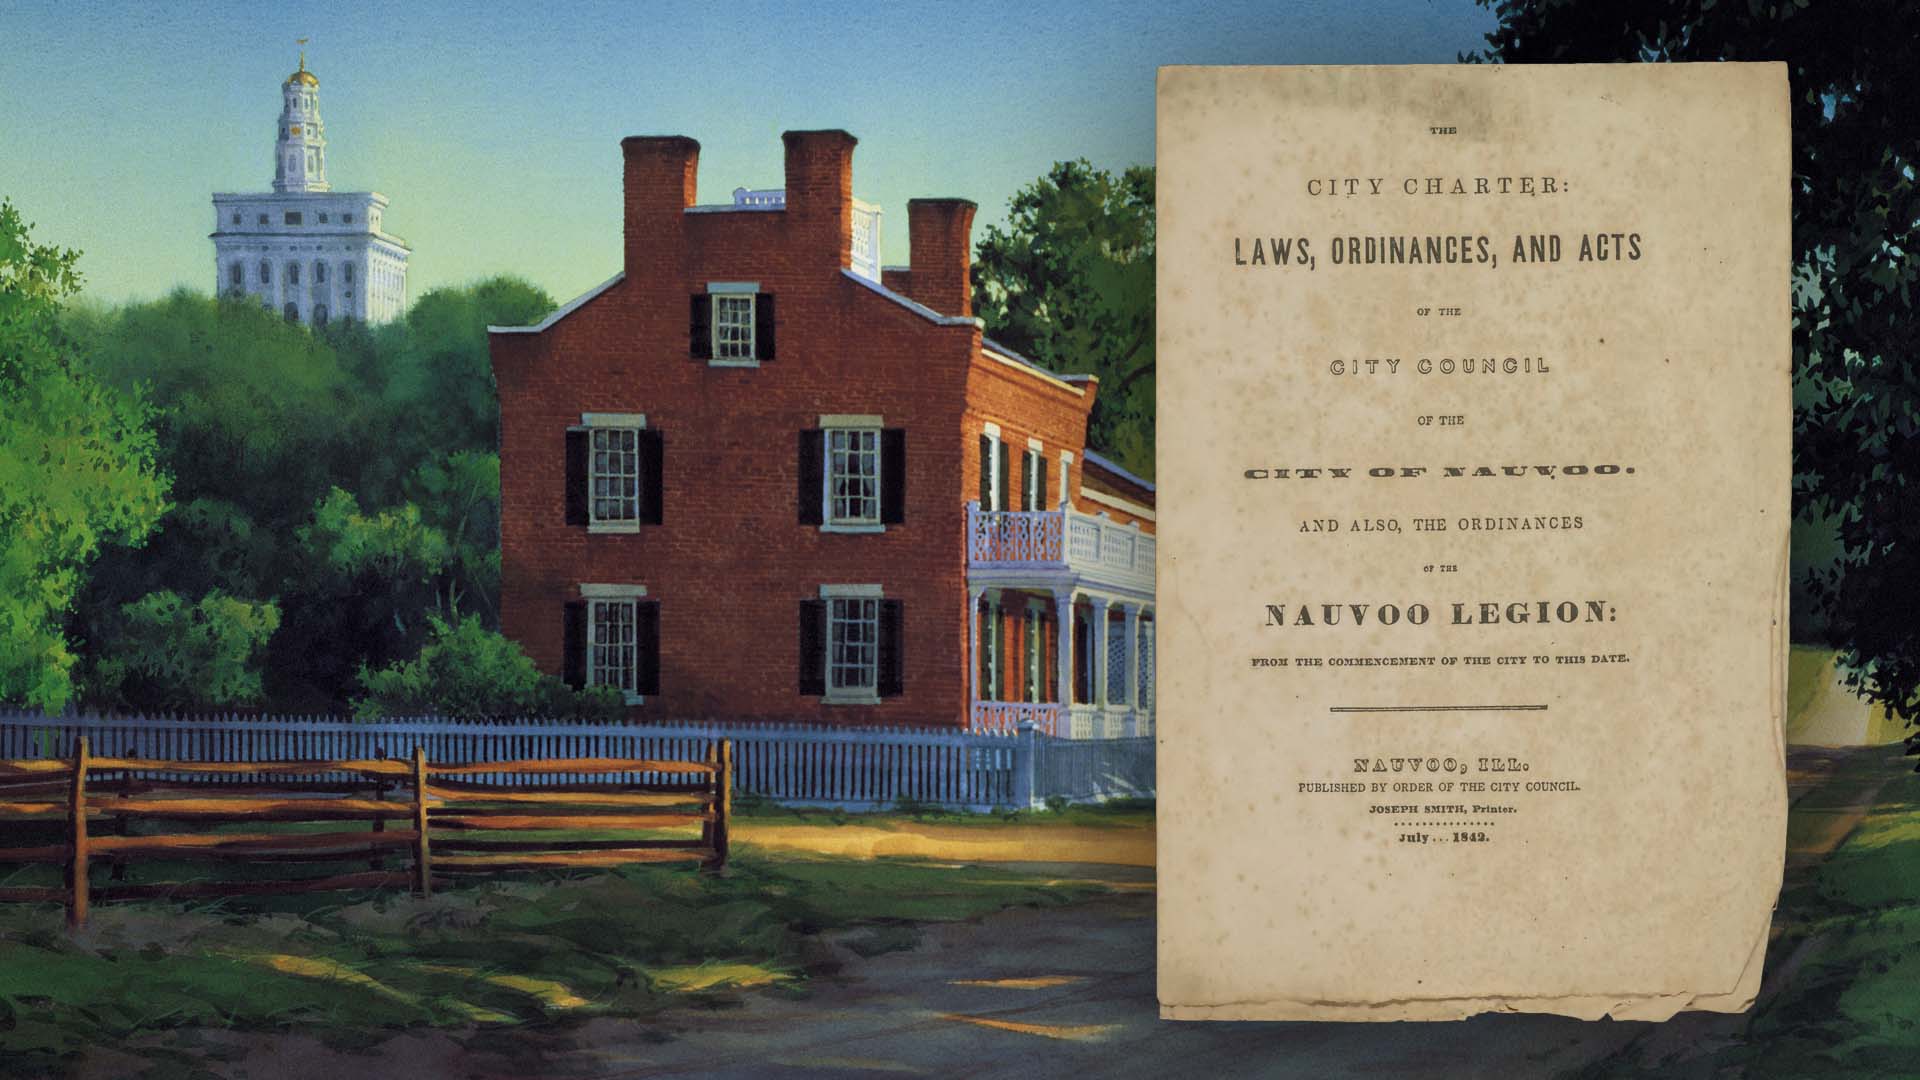 "Heber C. Kimball Home Summer" (Pintura de la casa de Heber C. Kimball en Nauvoo) por Al Rounds. Imagen de la carta constitucional de Nauvoo de la Biblioteca del Congreso.